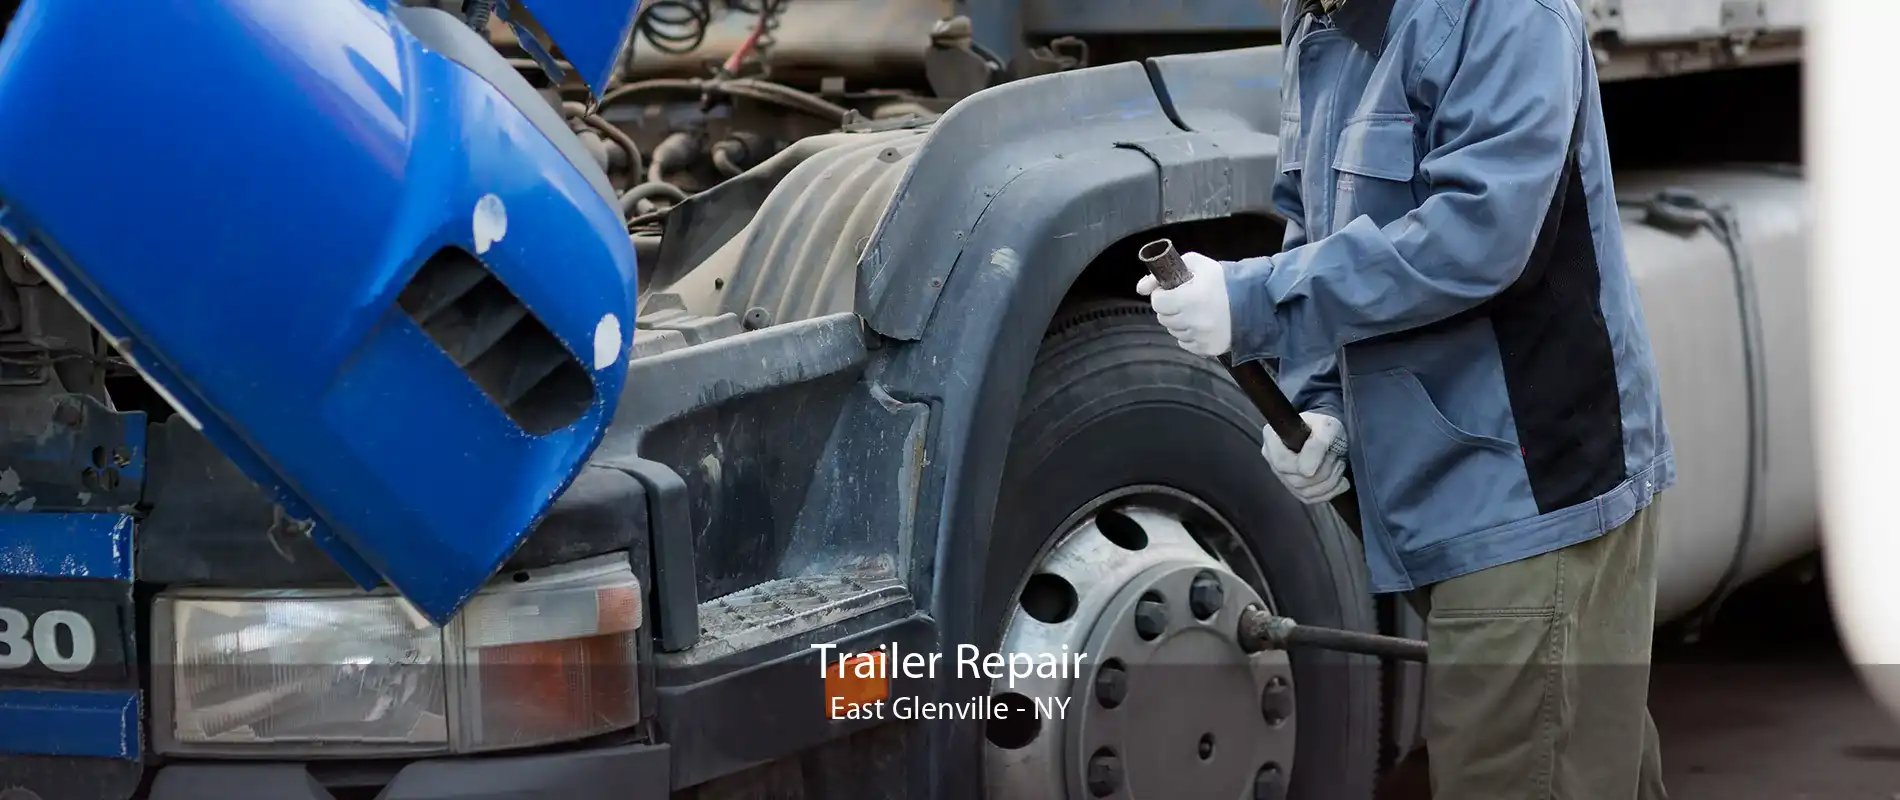 Trailer Repair East Glenville - NY